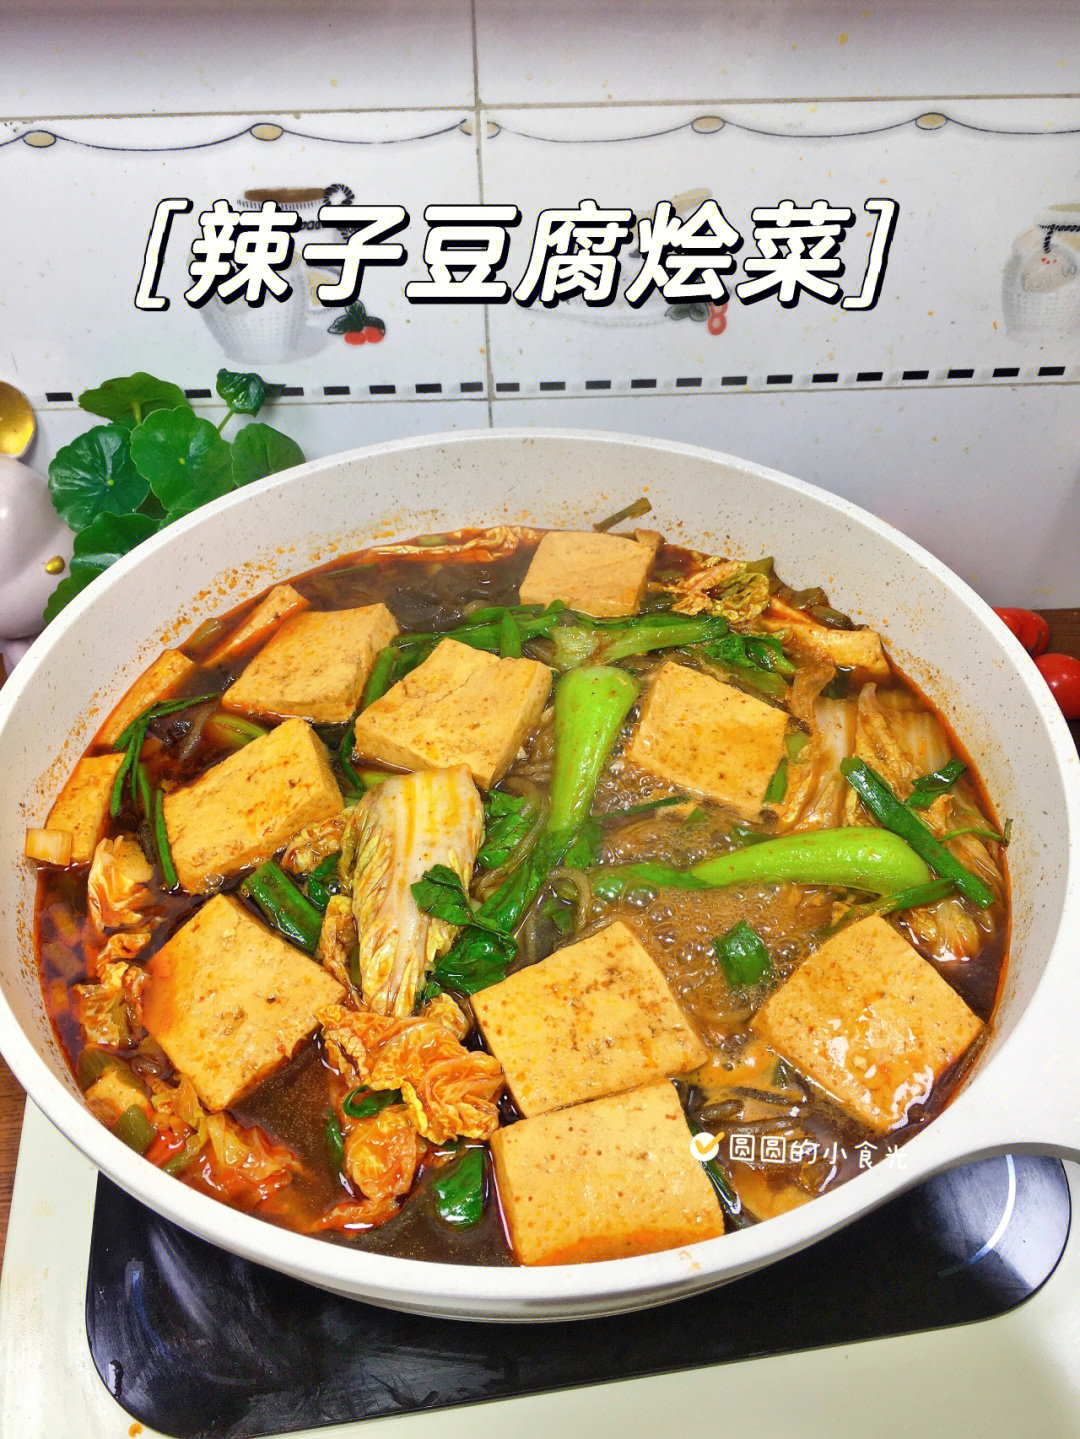 天冷了炖一锅热乎乎的豆腐烩菜暖心暖胃